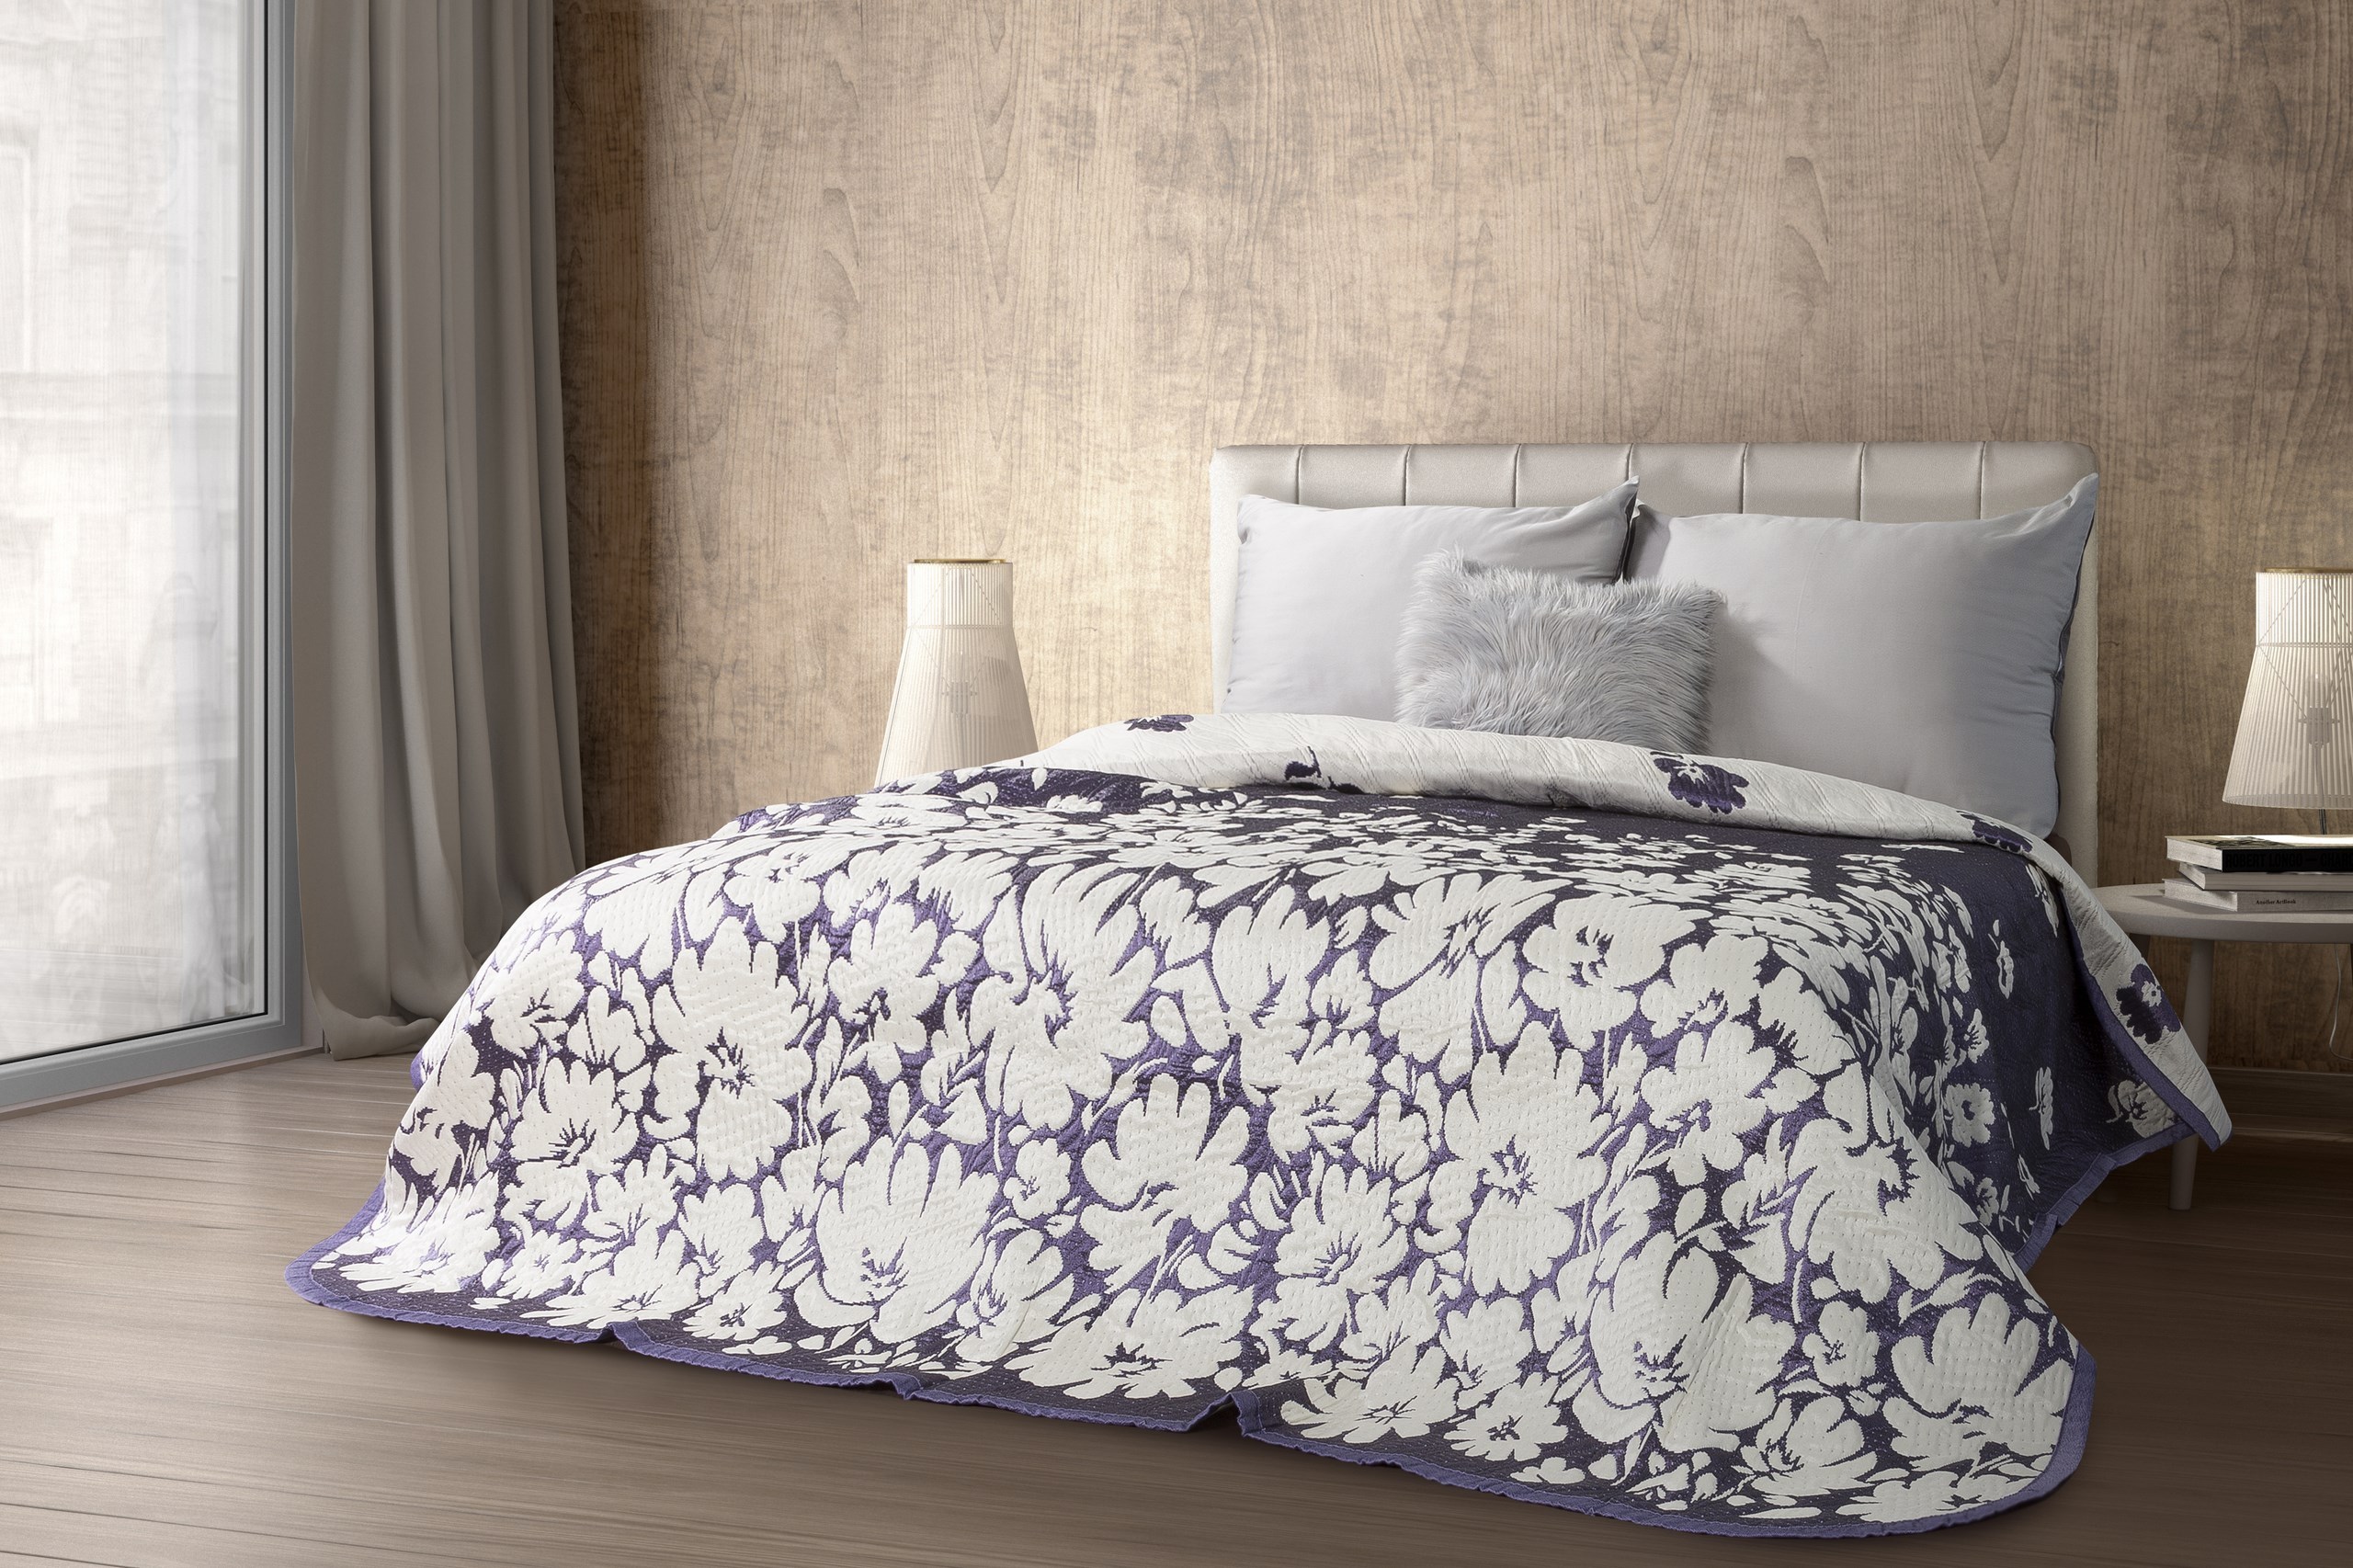 Kremowa narzuta na łóżko z motywem kwiatowym